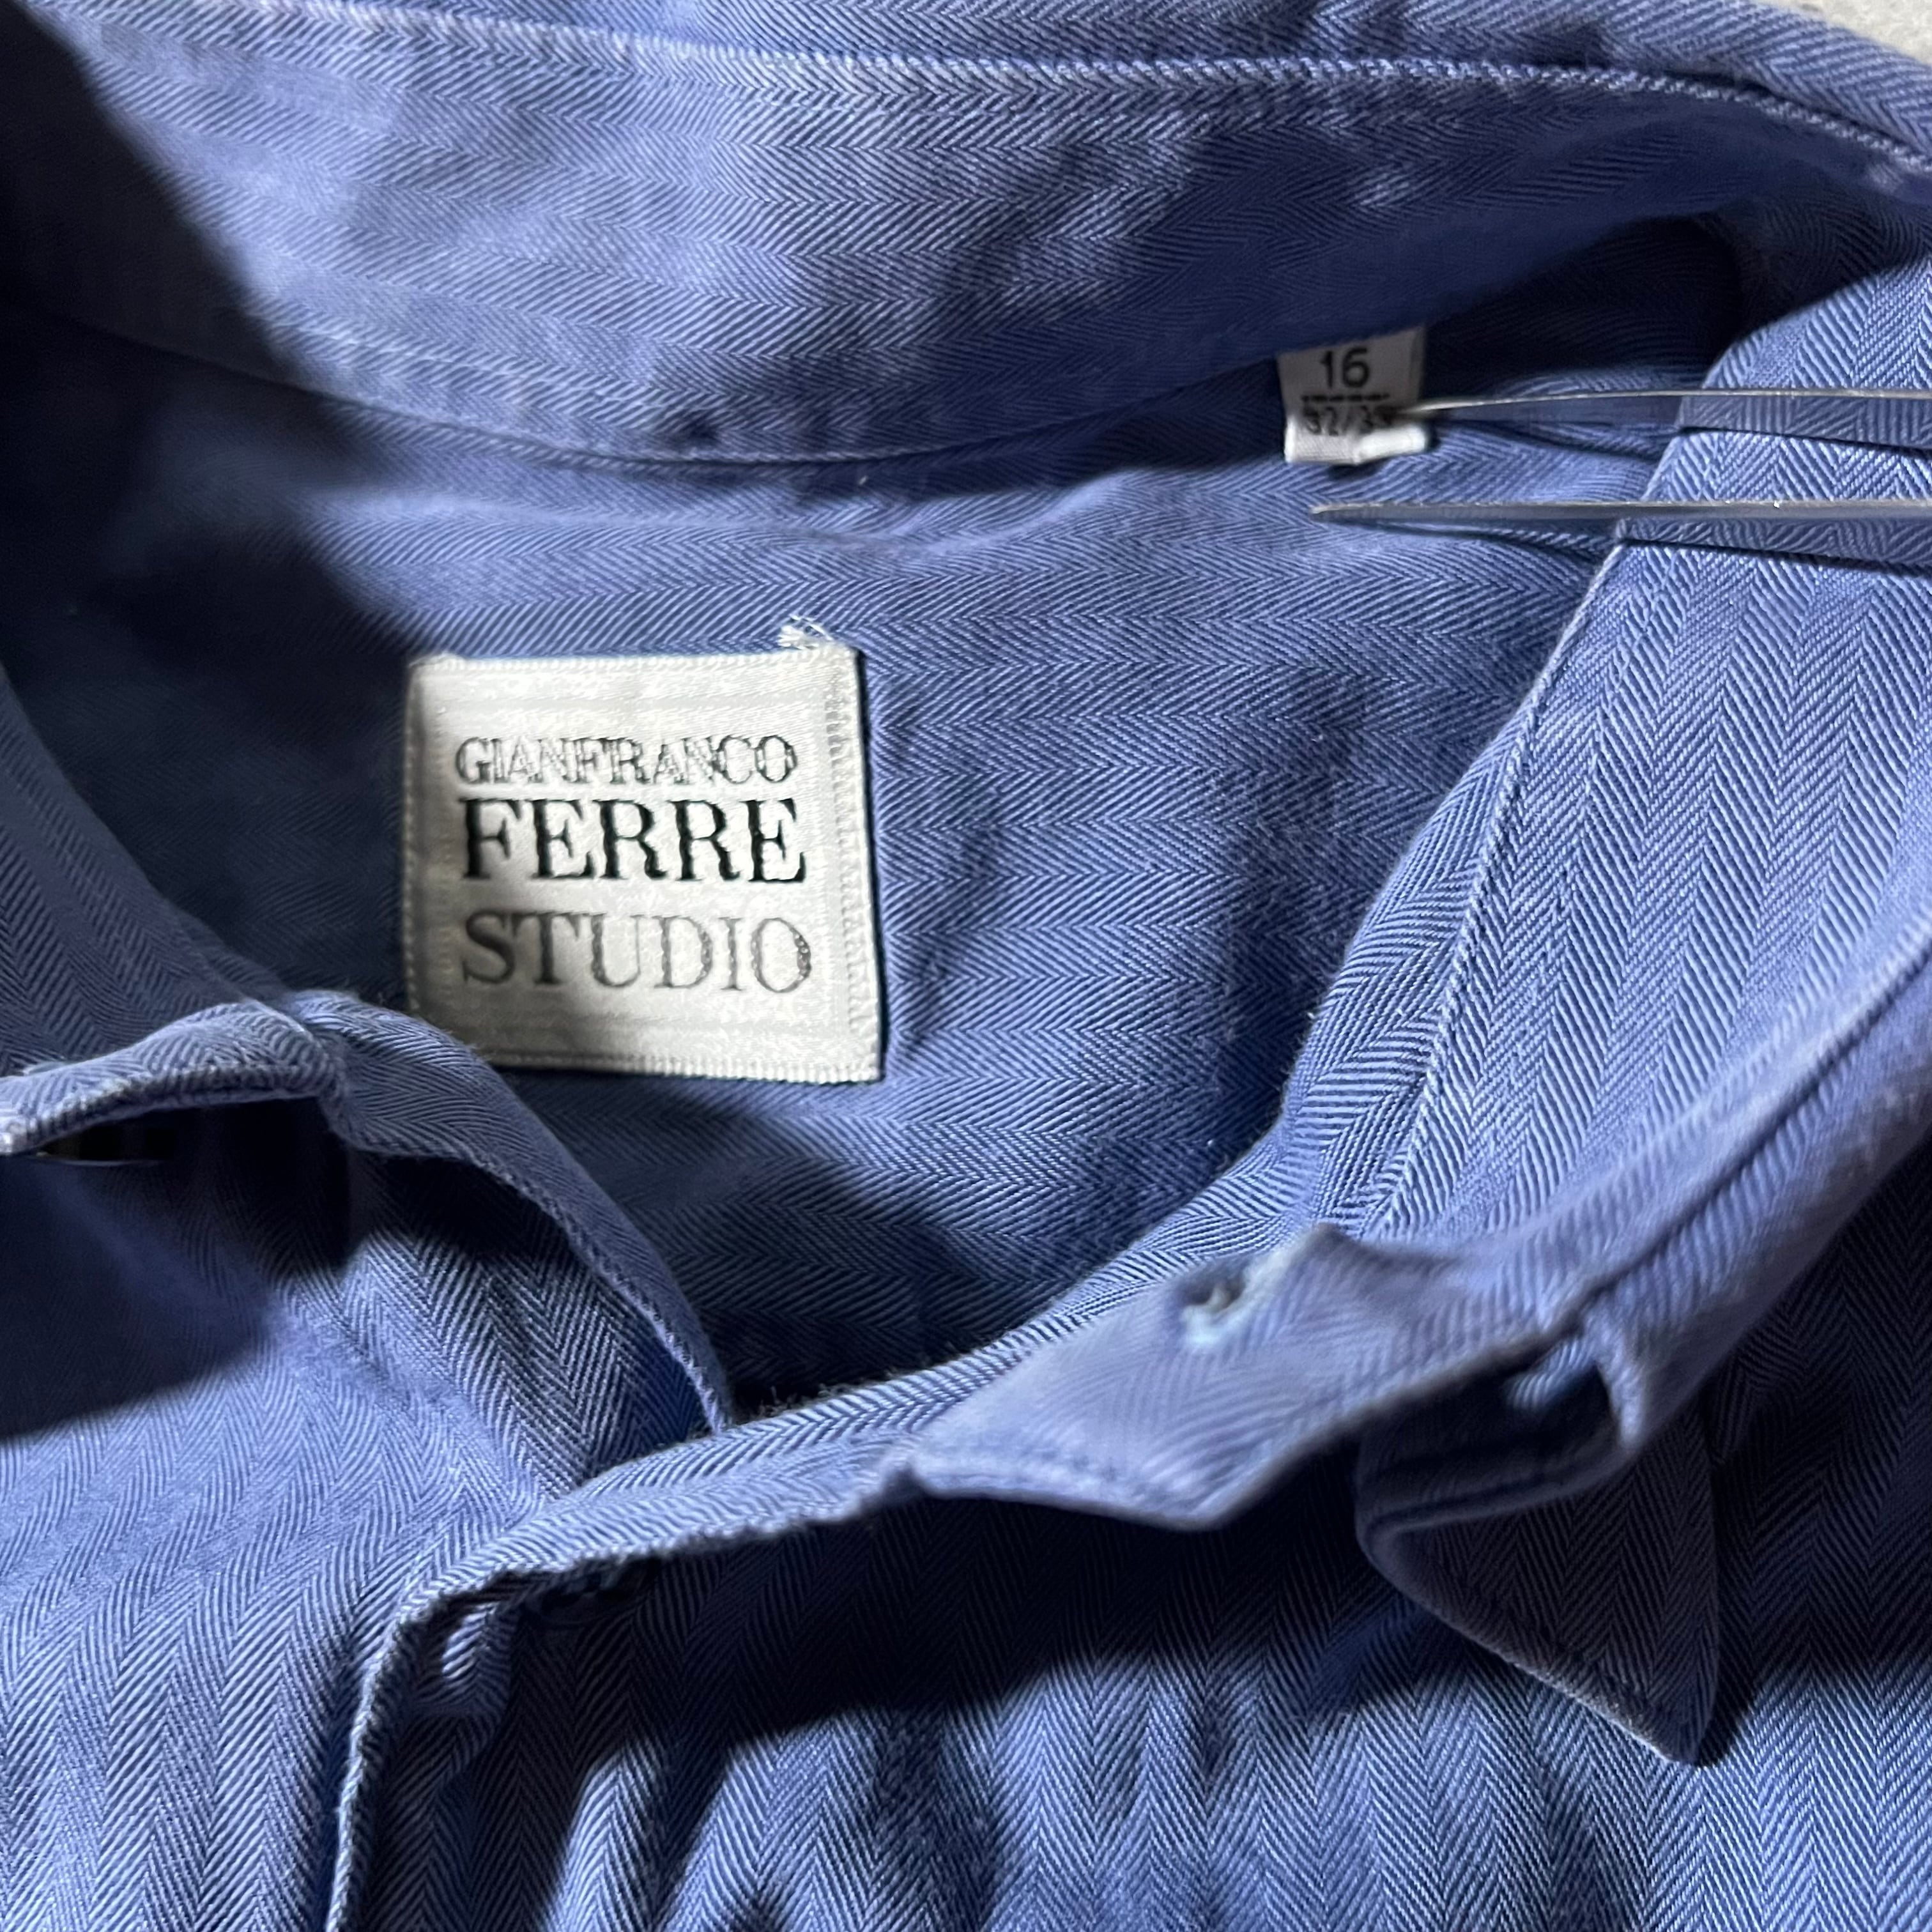 【美品】メゾン マルジェラ イエロー ストライプ シャツ 39サイズ イタリア製